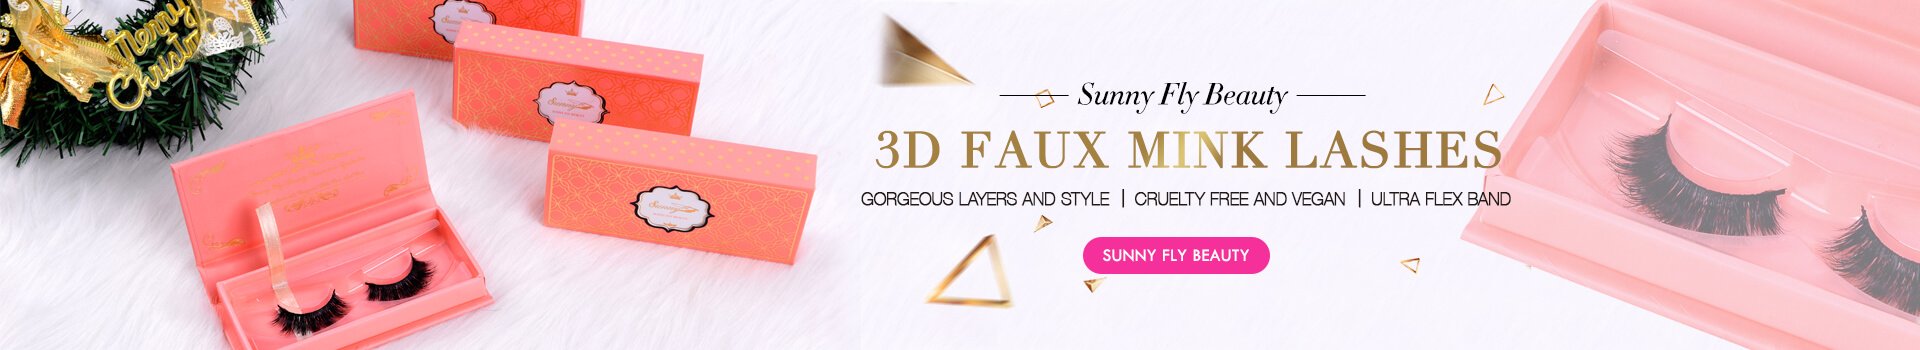 3D Faux Mink Lashes SD57